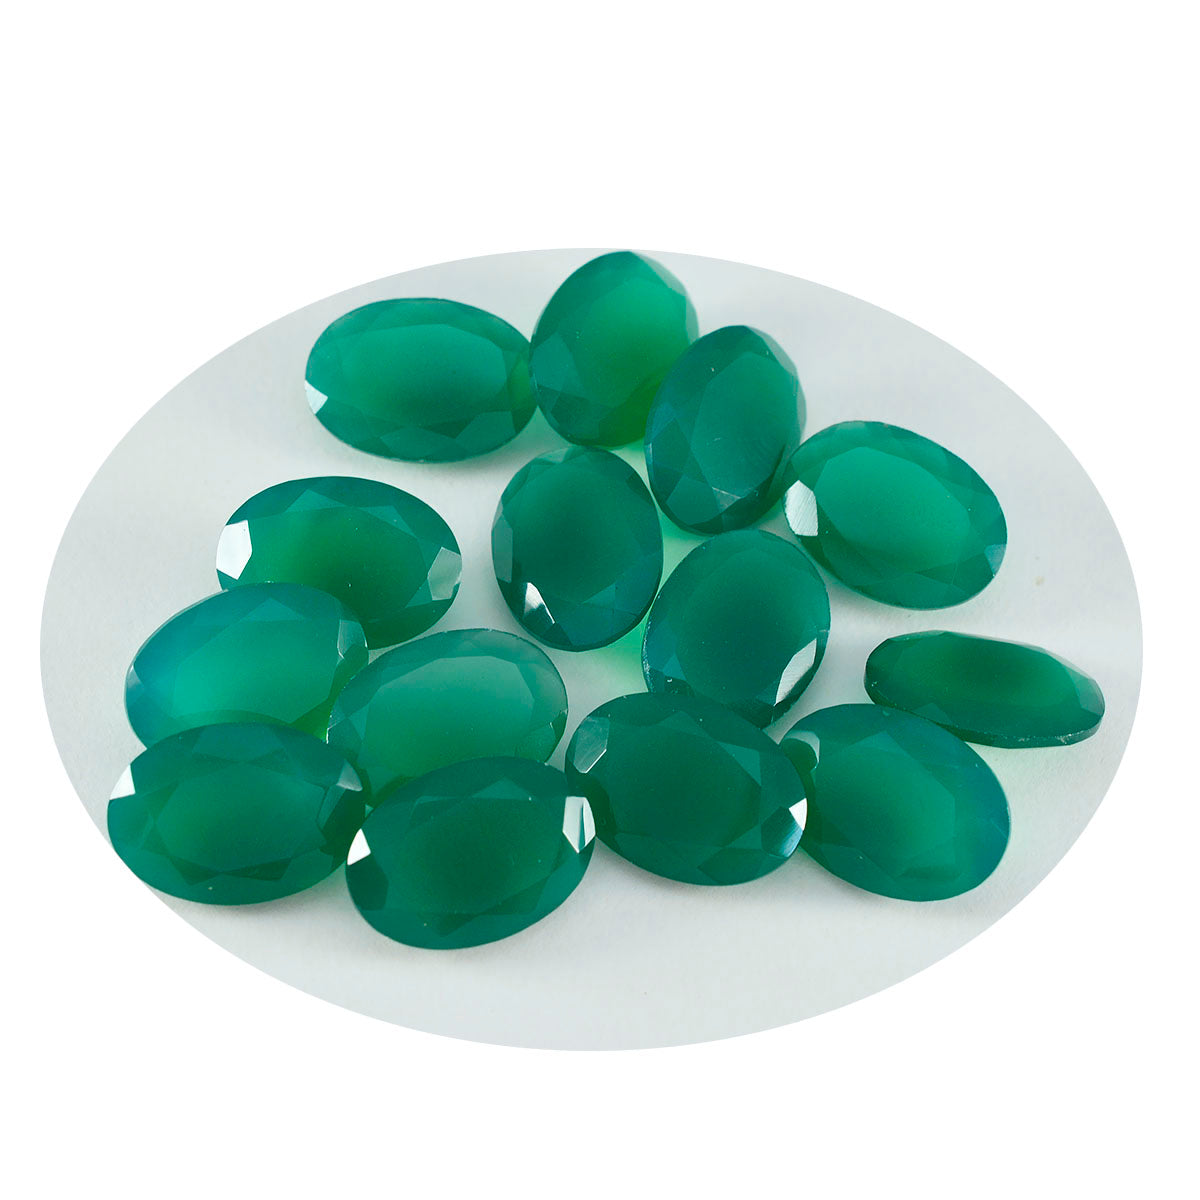 Riyogems 1PC echte groene onyx gefacetteerde 6x8 mm ovale vorm mooie kwaliteit losse edelsteen